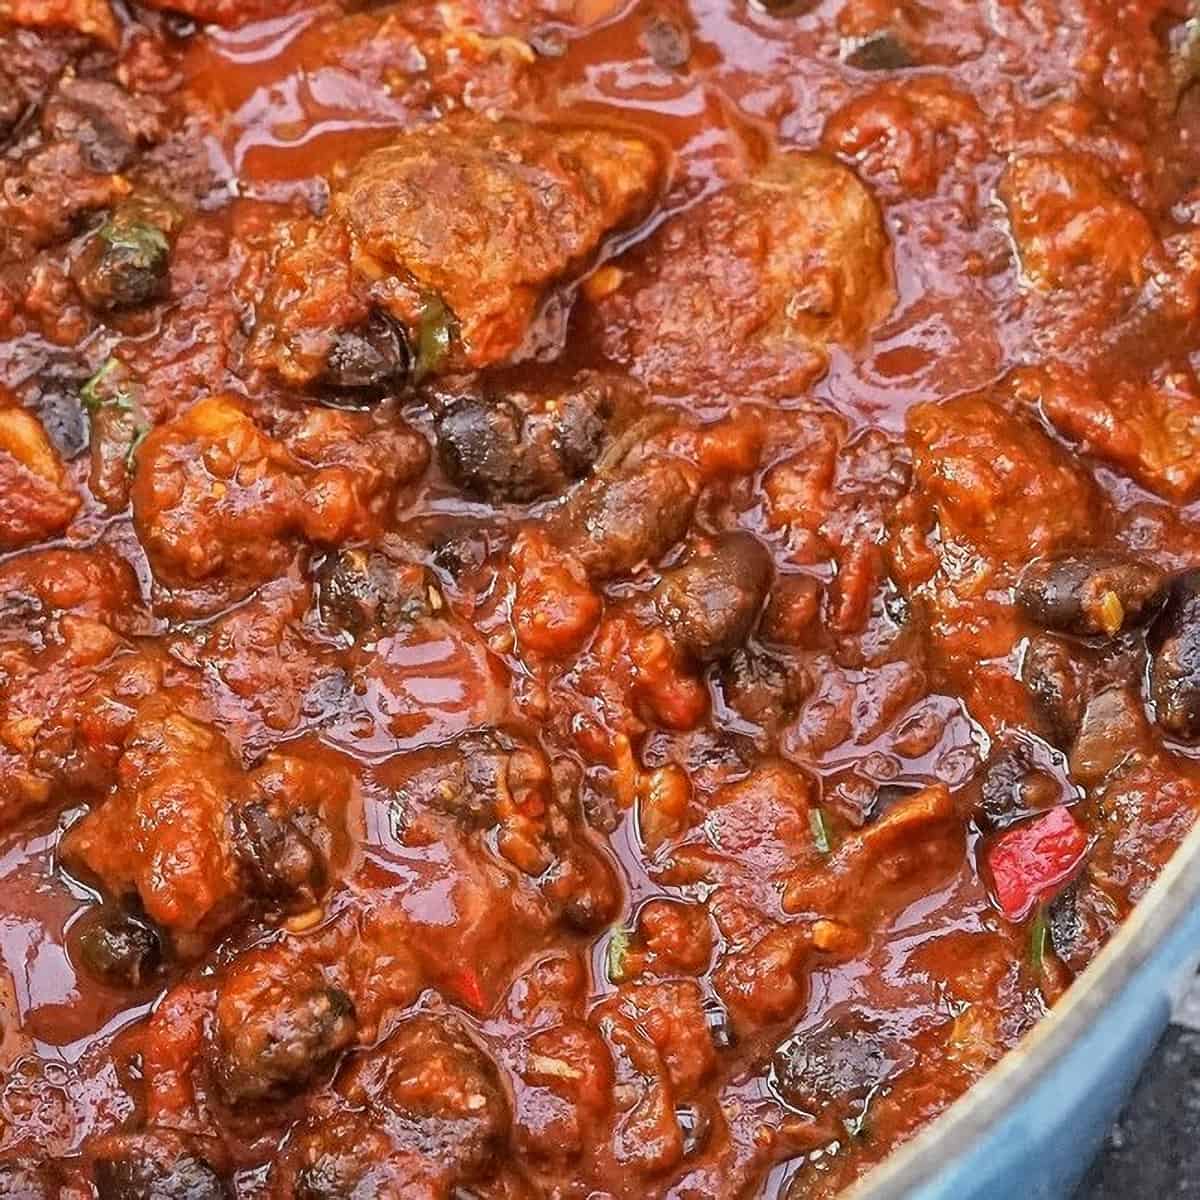 25 Best Chili Recipes - Goat Chili